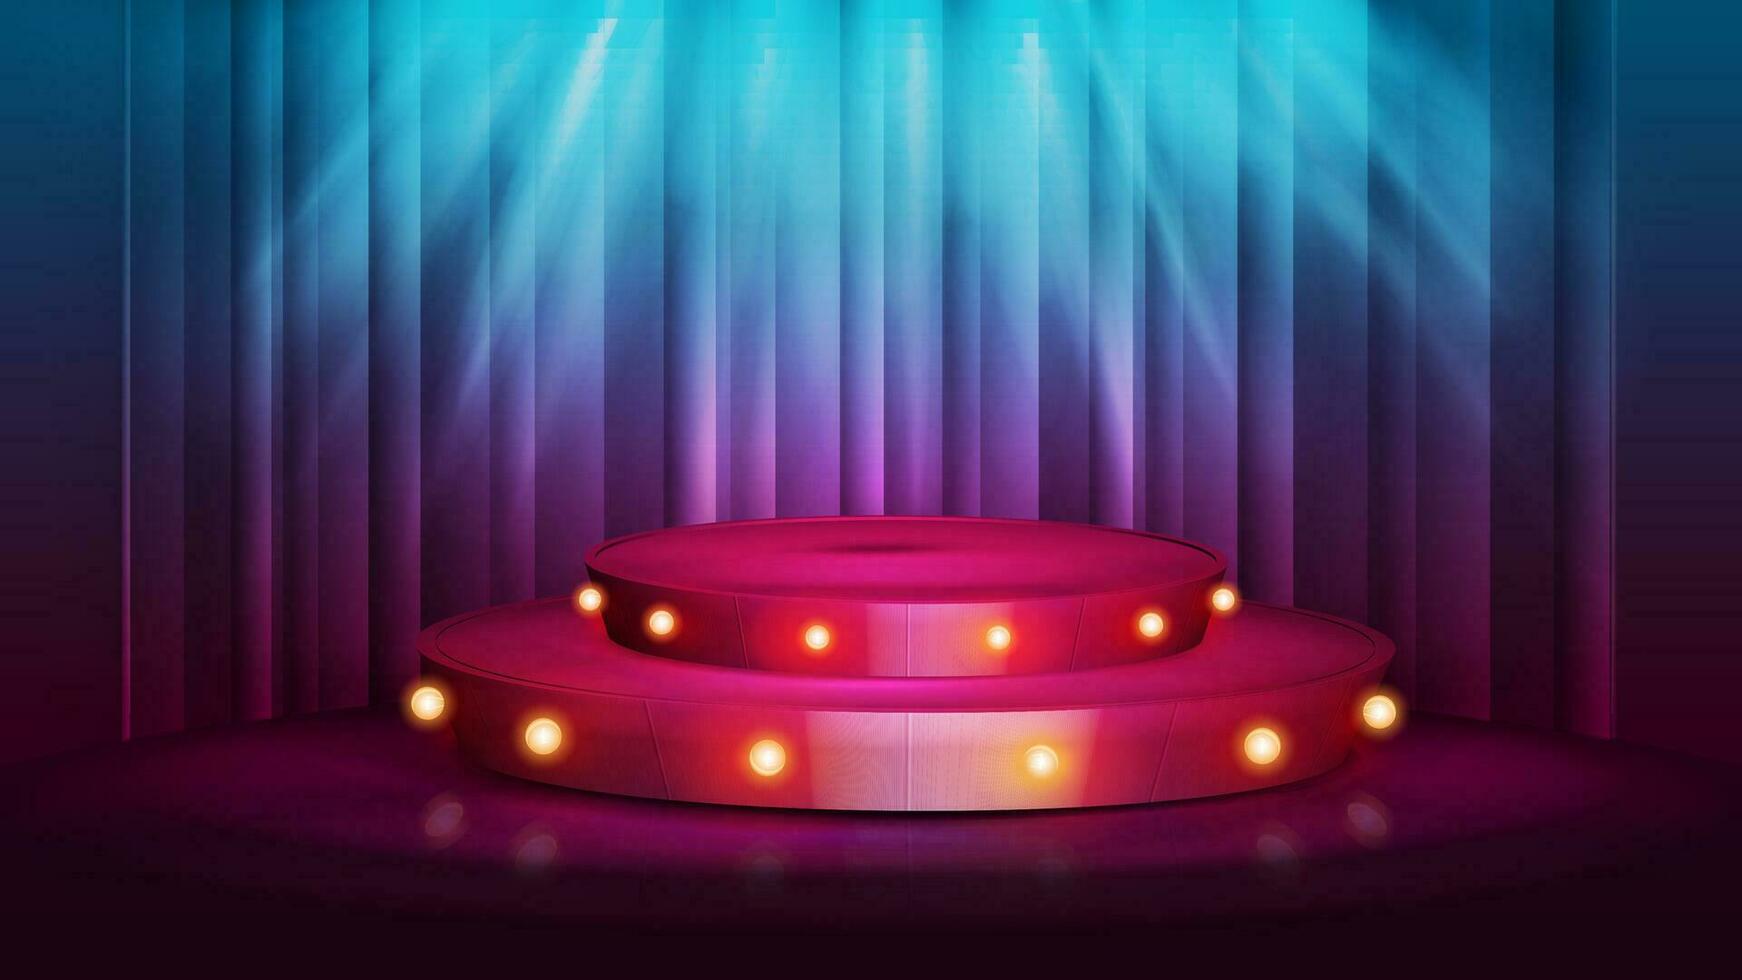 Karikatur rot runden Podium mit Glühbirnen Beleuchtung und Scheinwerfer auf Hintergrund mit Vorhang vektor